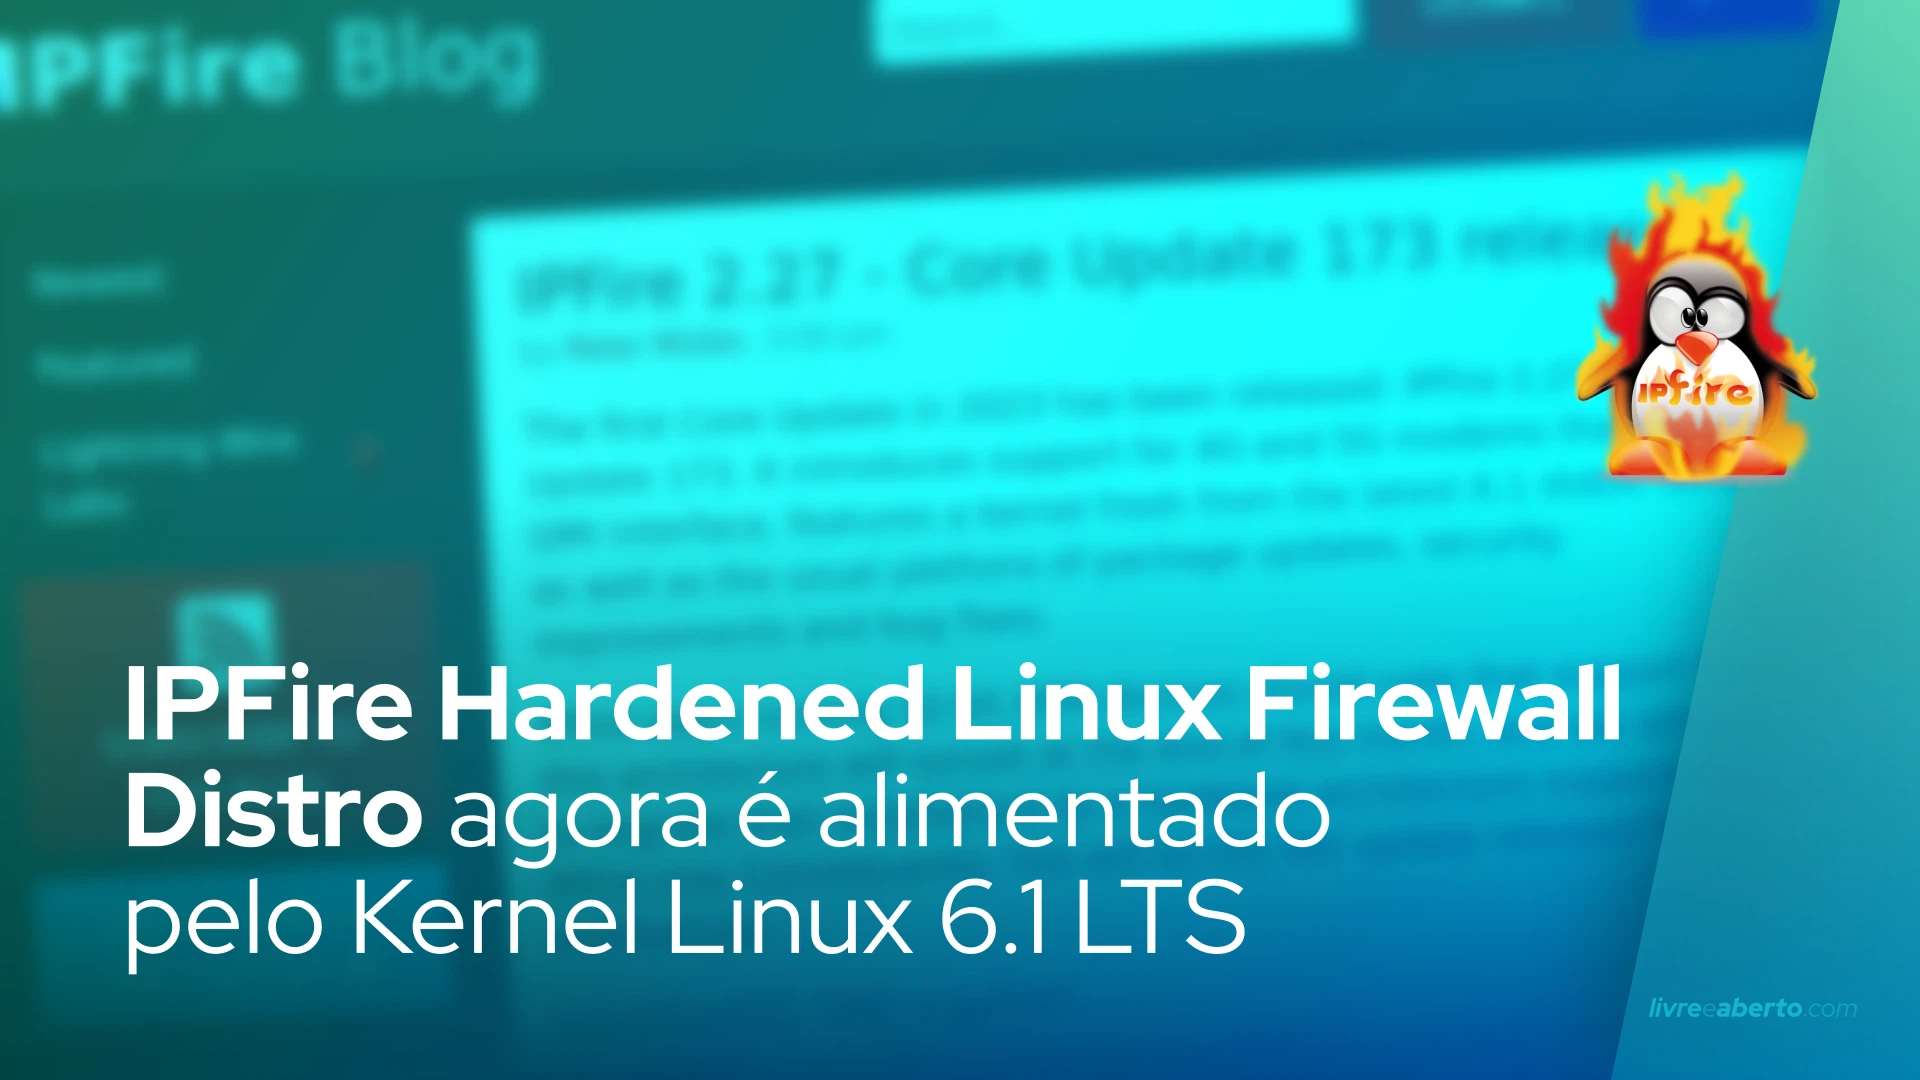 IPFire Hardened Linux Firewall Distro agora é alimentado pelo Kernel Linux 6.1 LTS